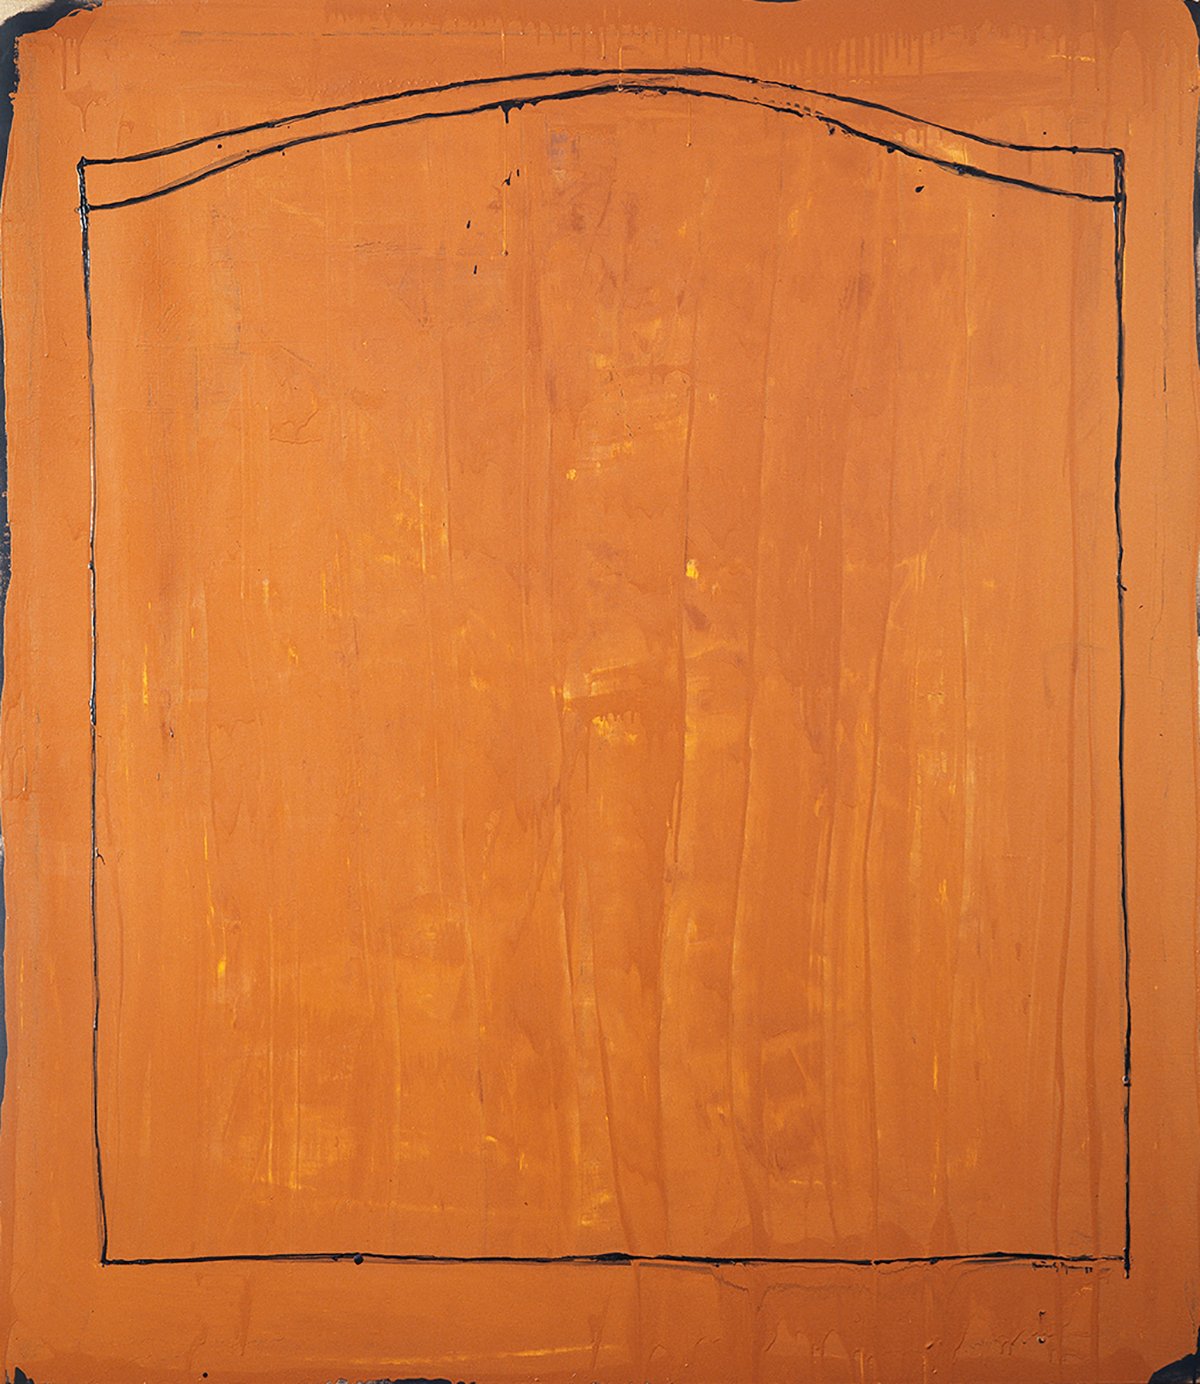   “El camp des de la finestra” , 1987 Oil on canvas (192 x 168 cm.) 